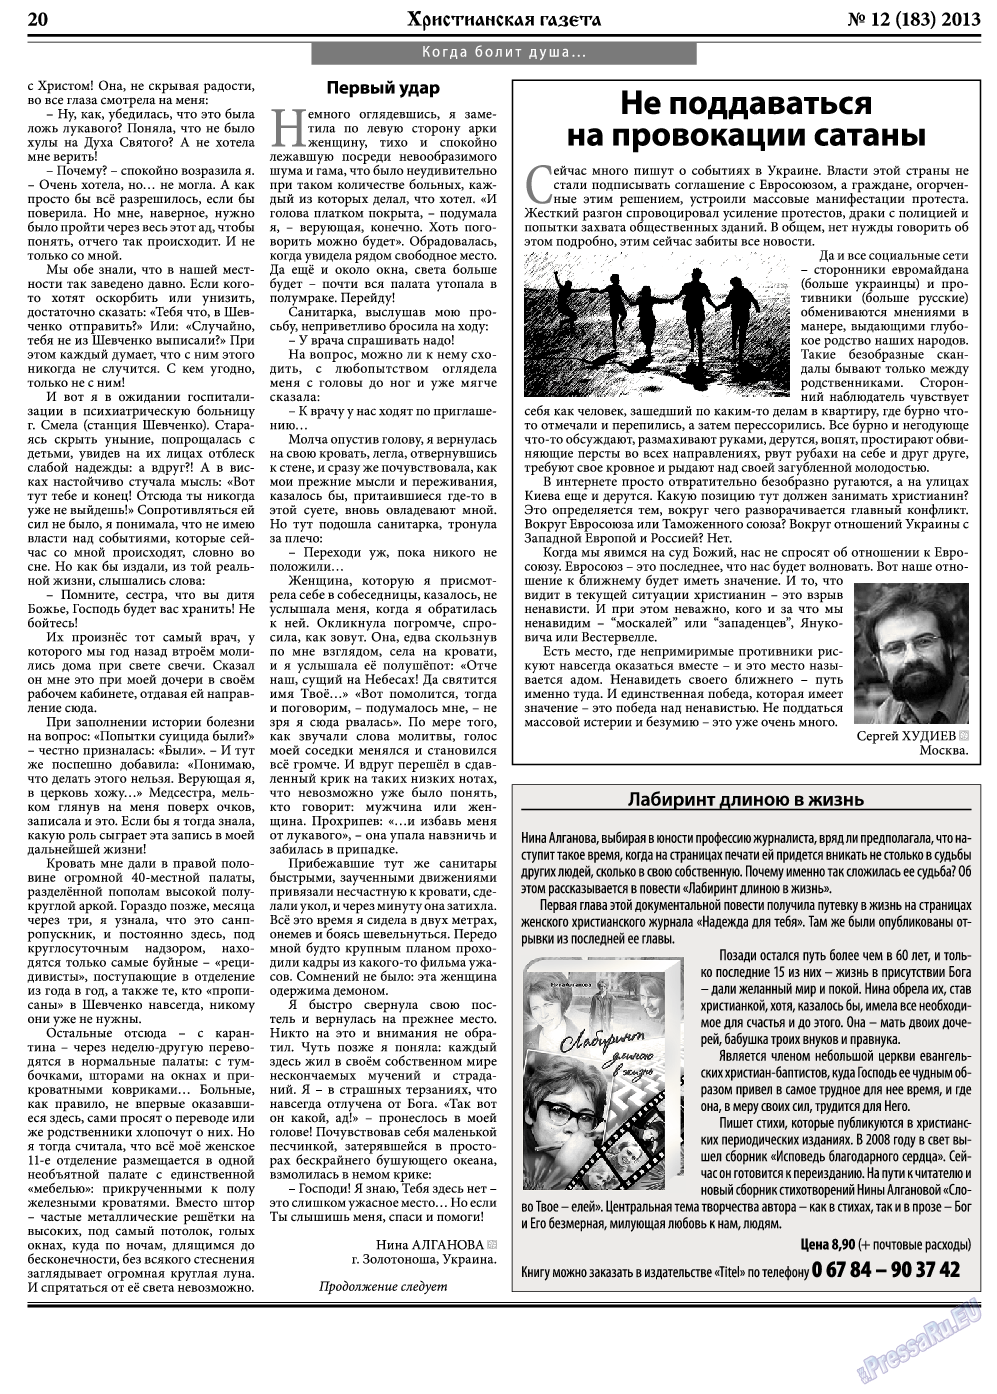 Христианская газета, газета. 2013 №12 стр.28